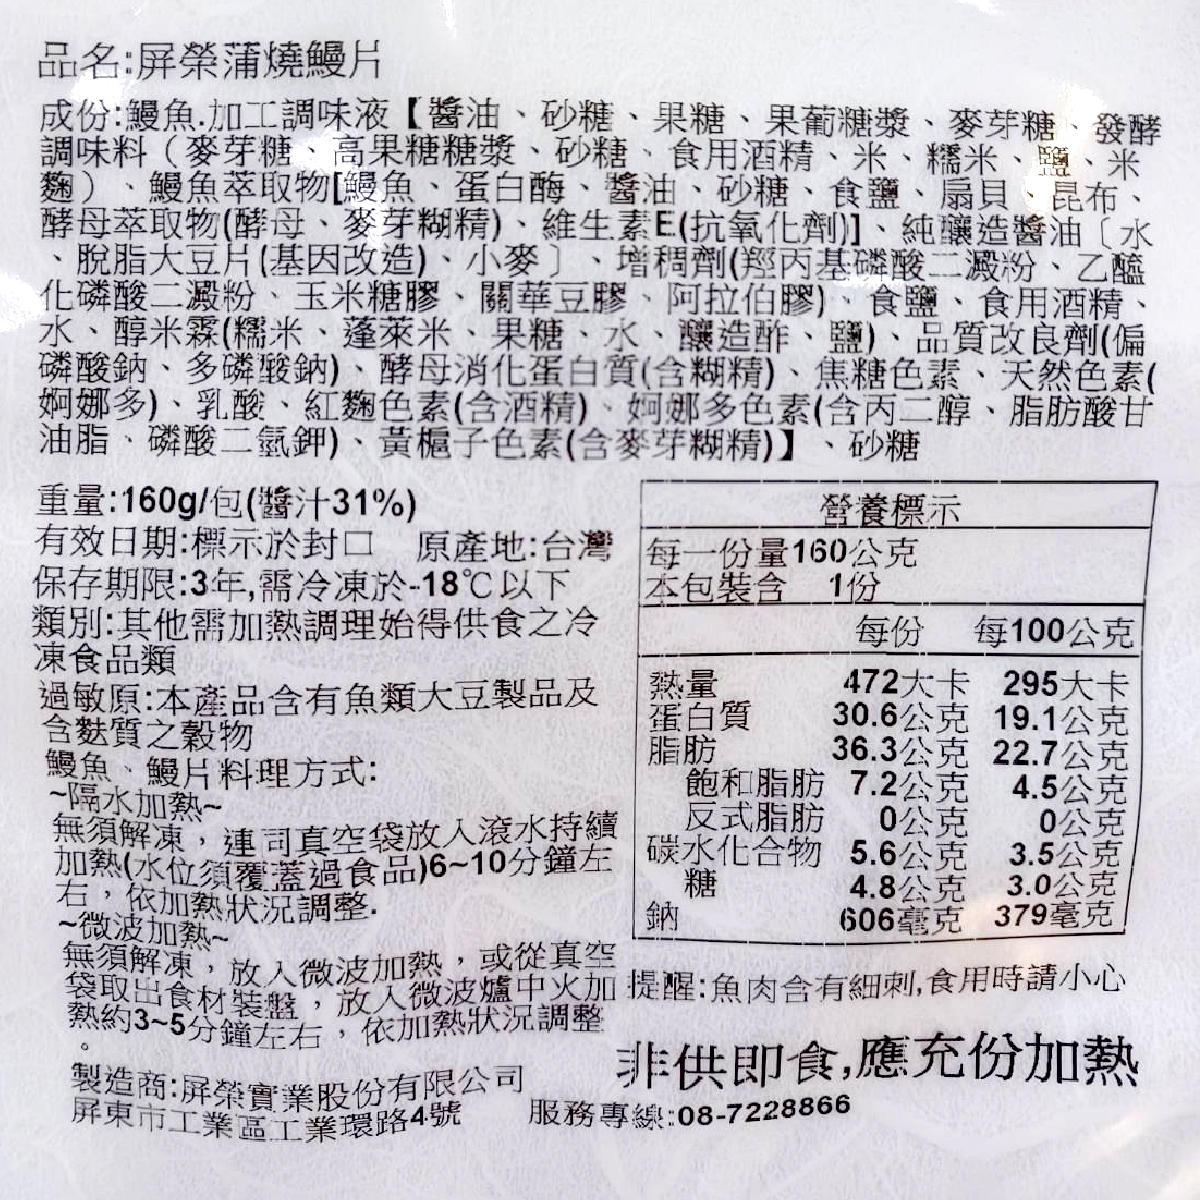 【屏榮坊】外銷日本等級蒲燒鰻魚片160g 